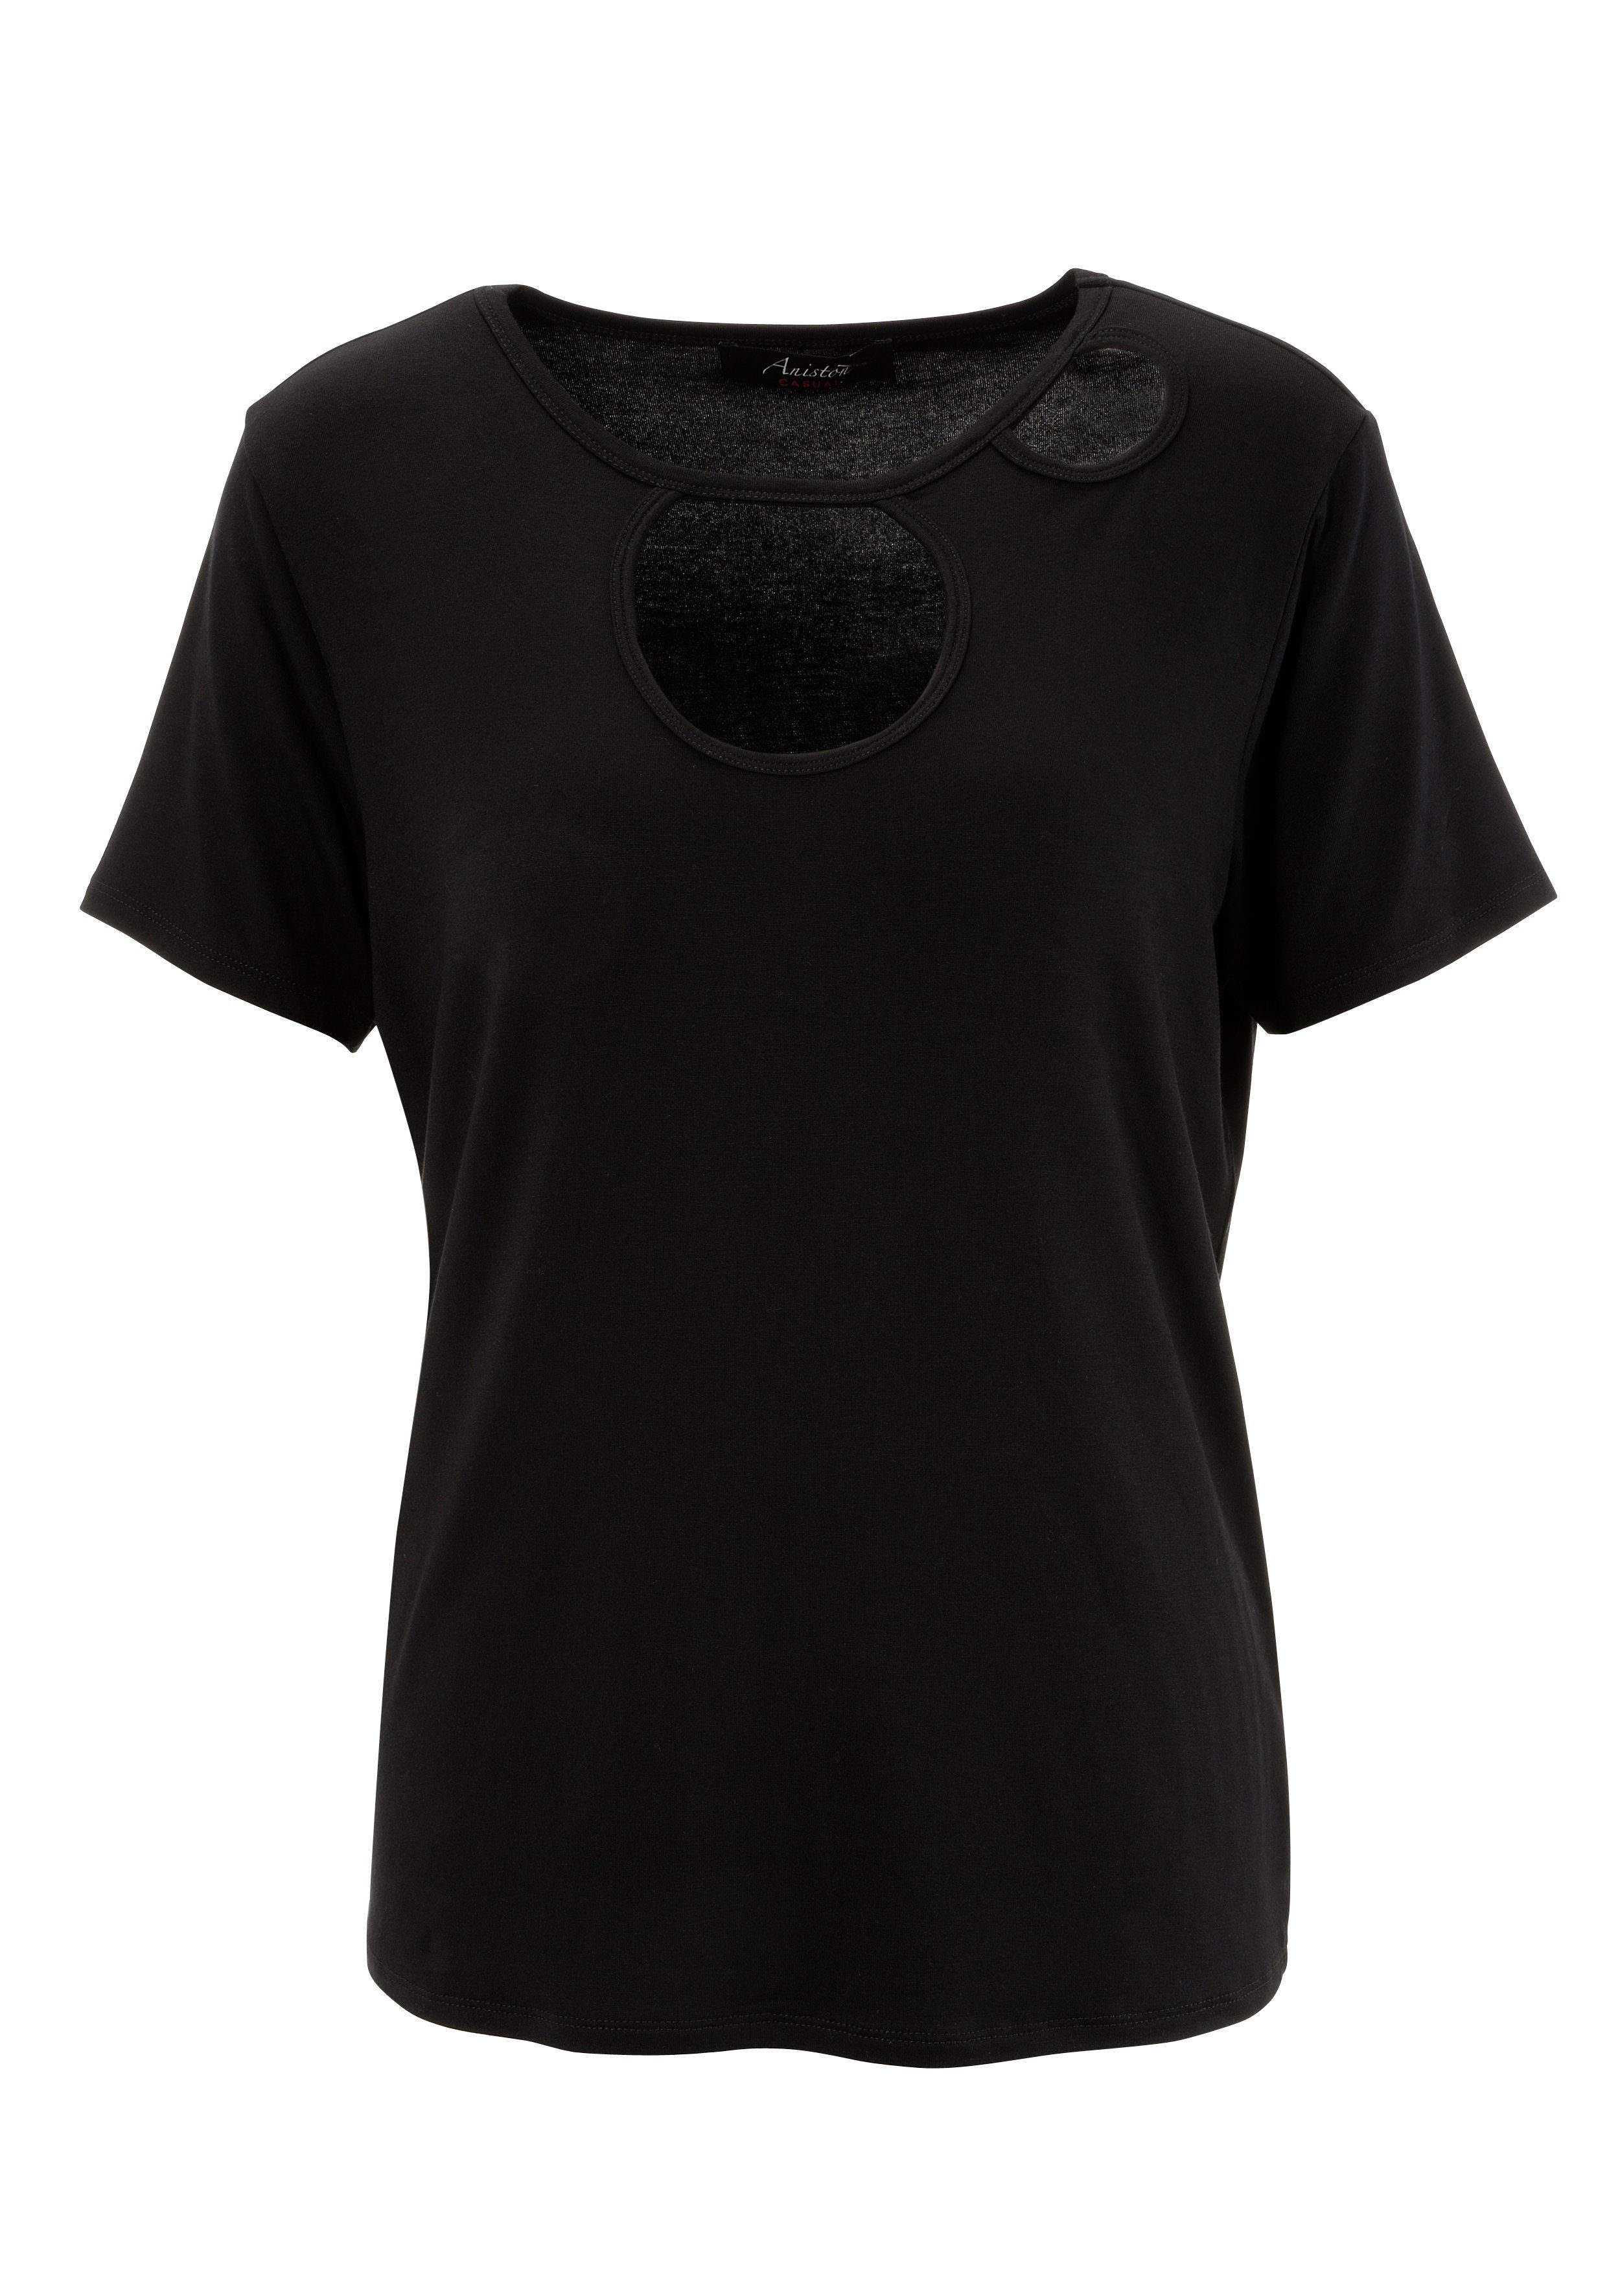 KOLLEKTION Aniston CASUAL Vorderteil trendigen T-Shirt im mit Cut-out's schwarz NEUE -